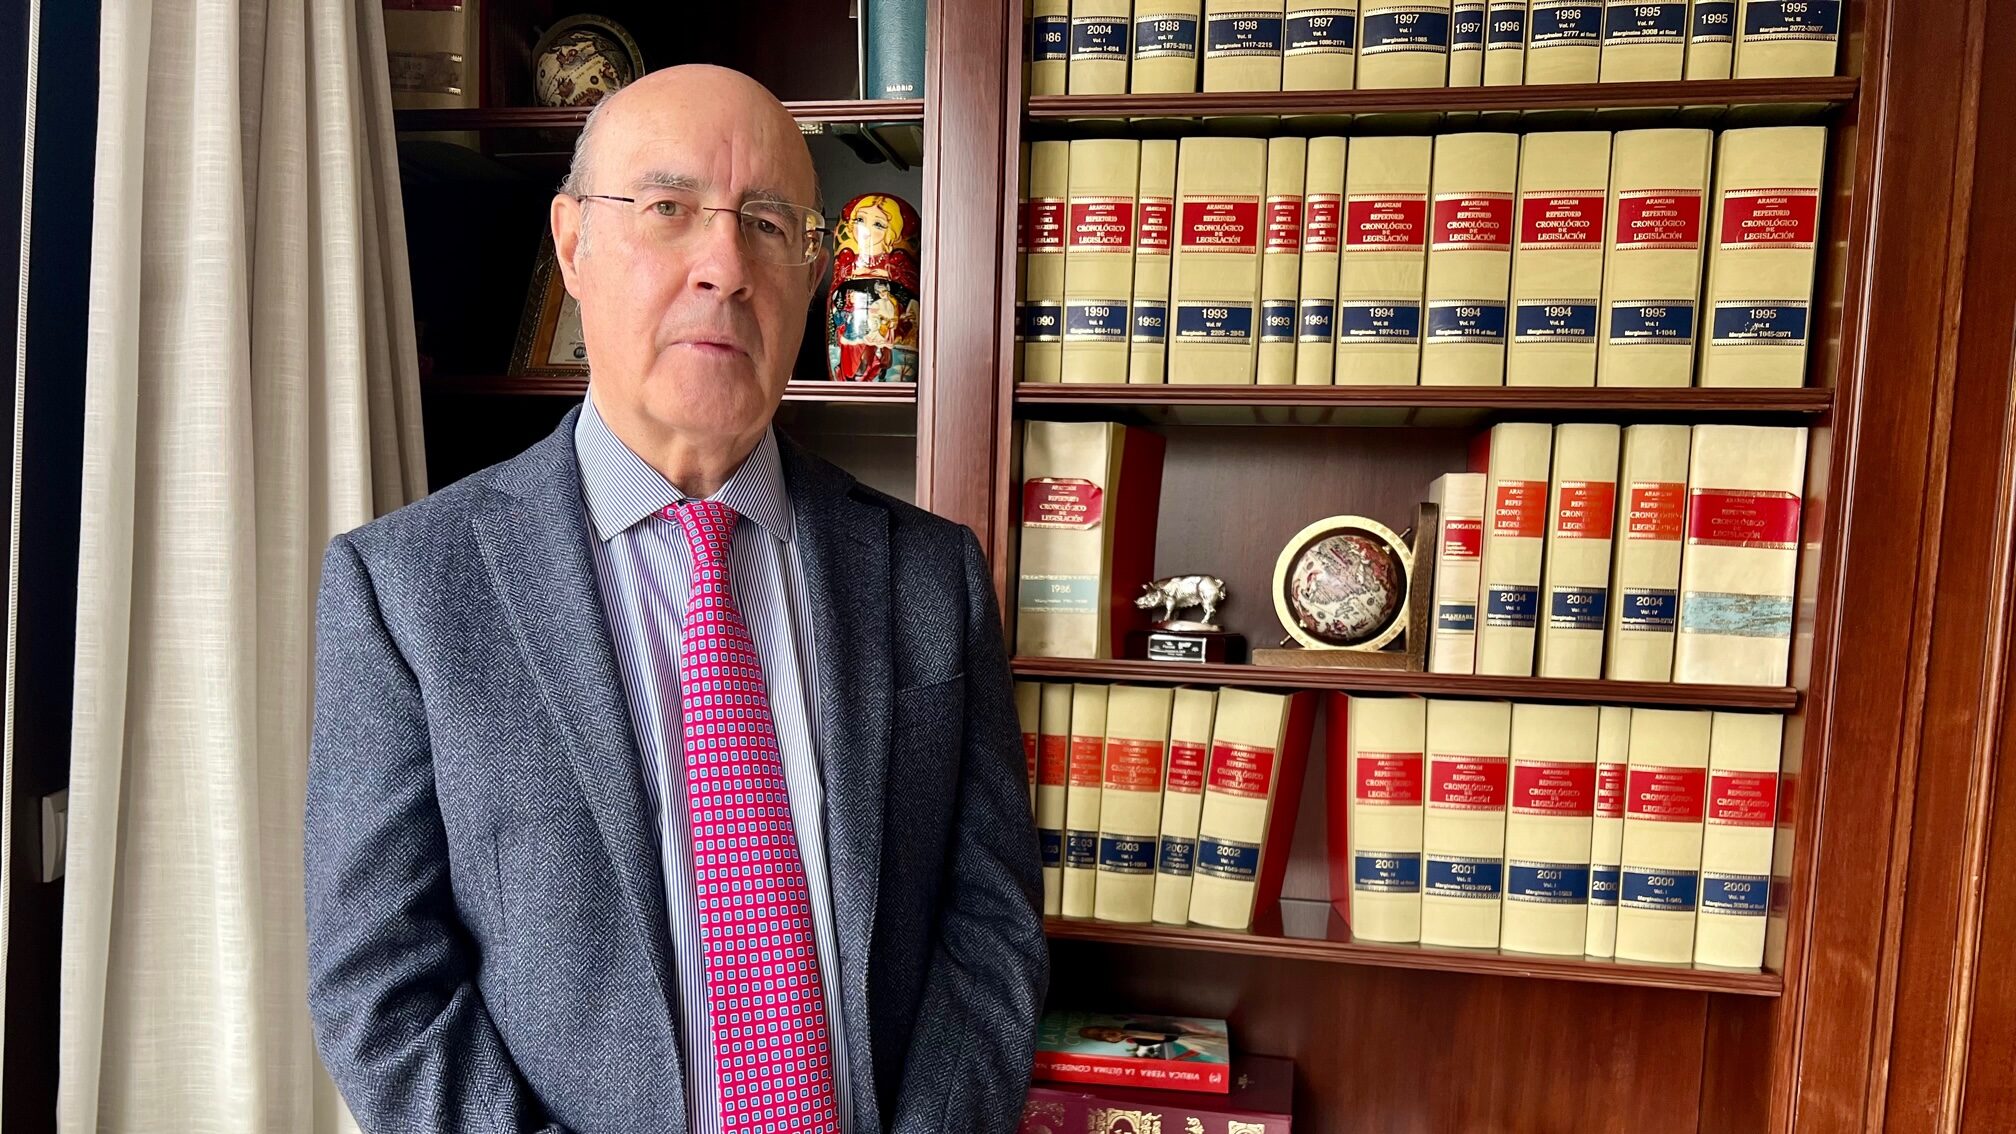 El abogado y gestor Ricardo Bocanegra en su despacho de Marbella este lunes durante la entrevista con Vozpópuli. FOTO/ CABANILLAS